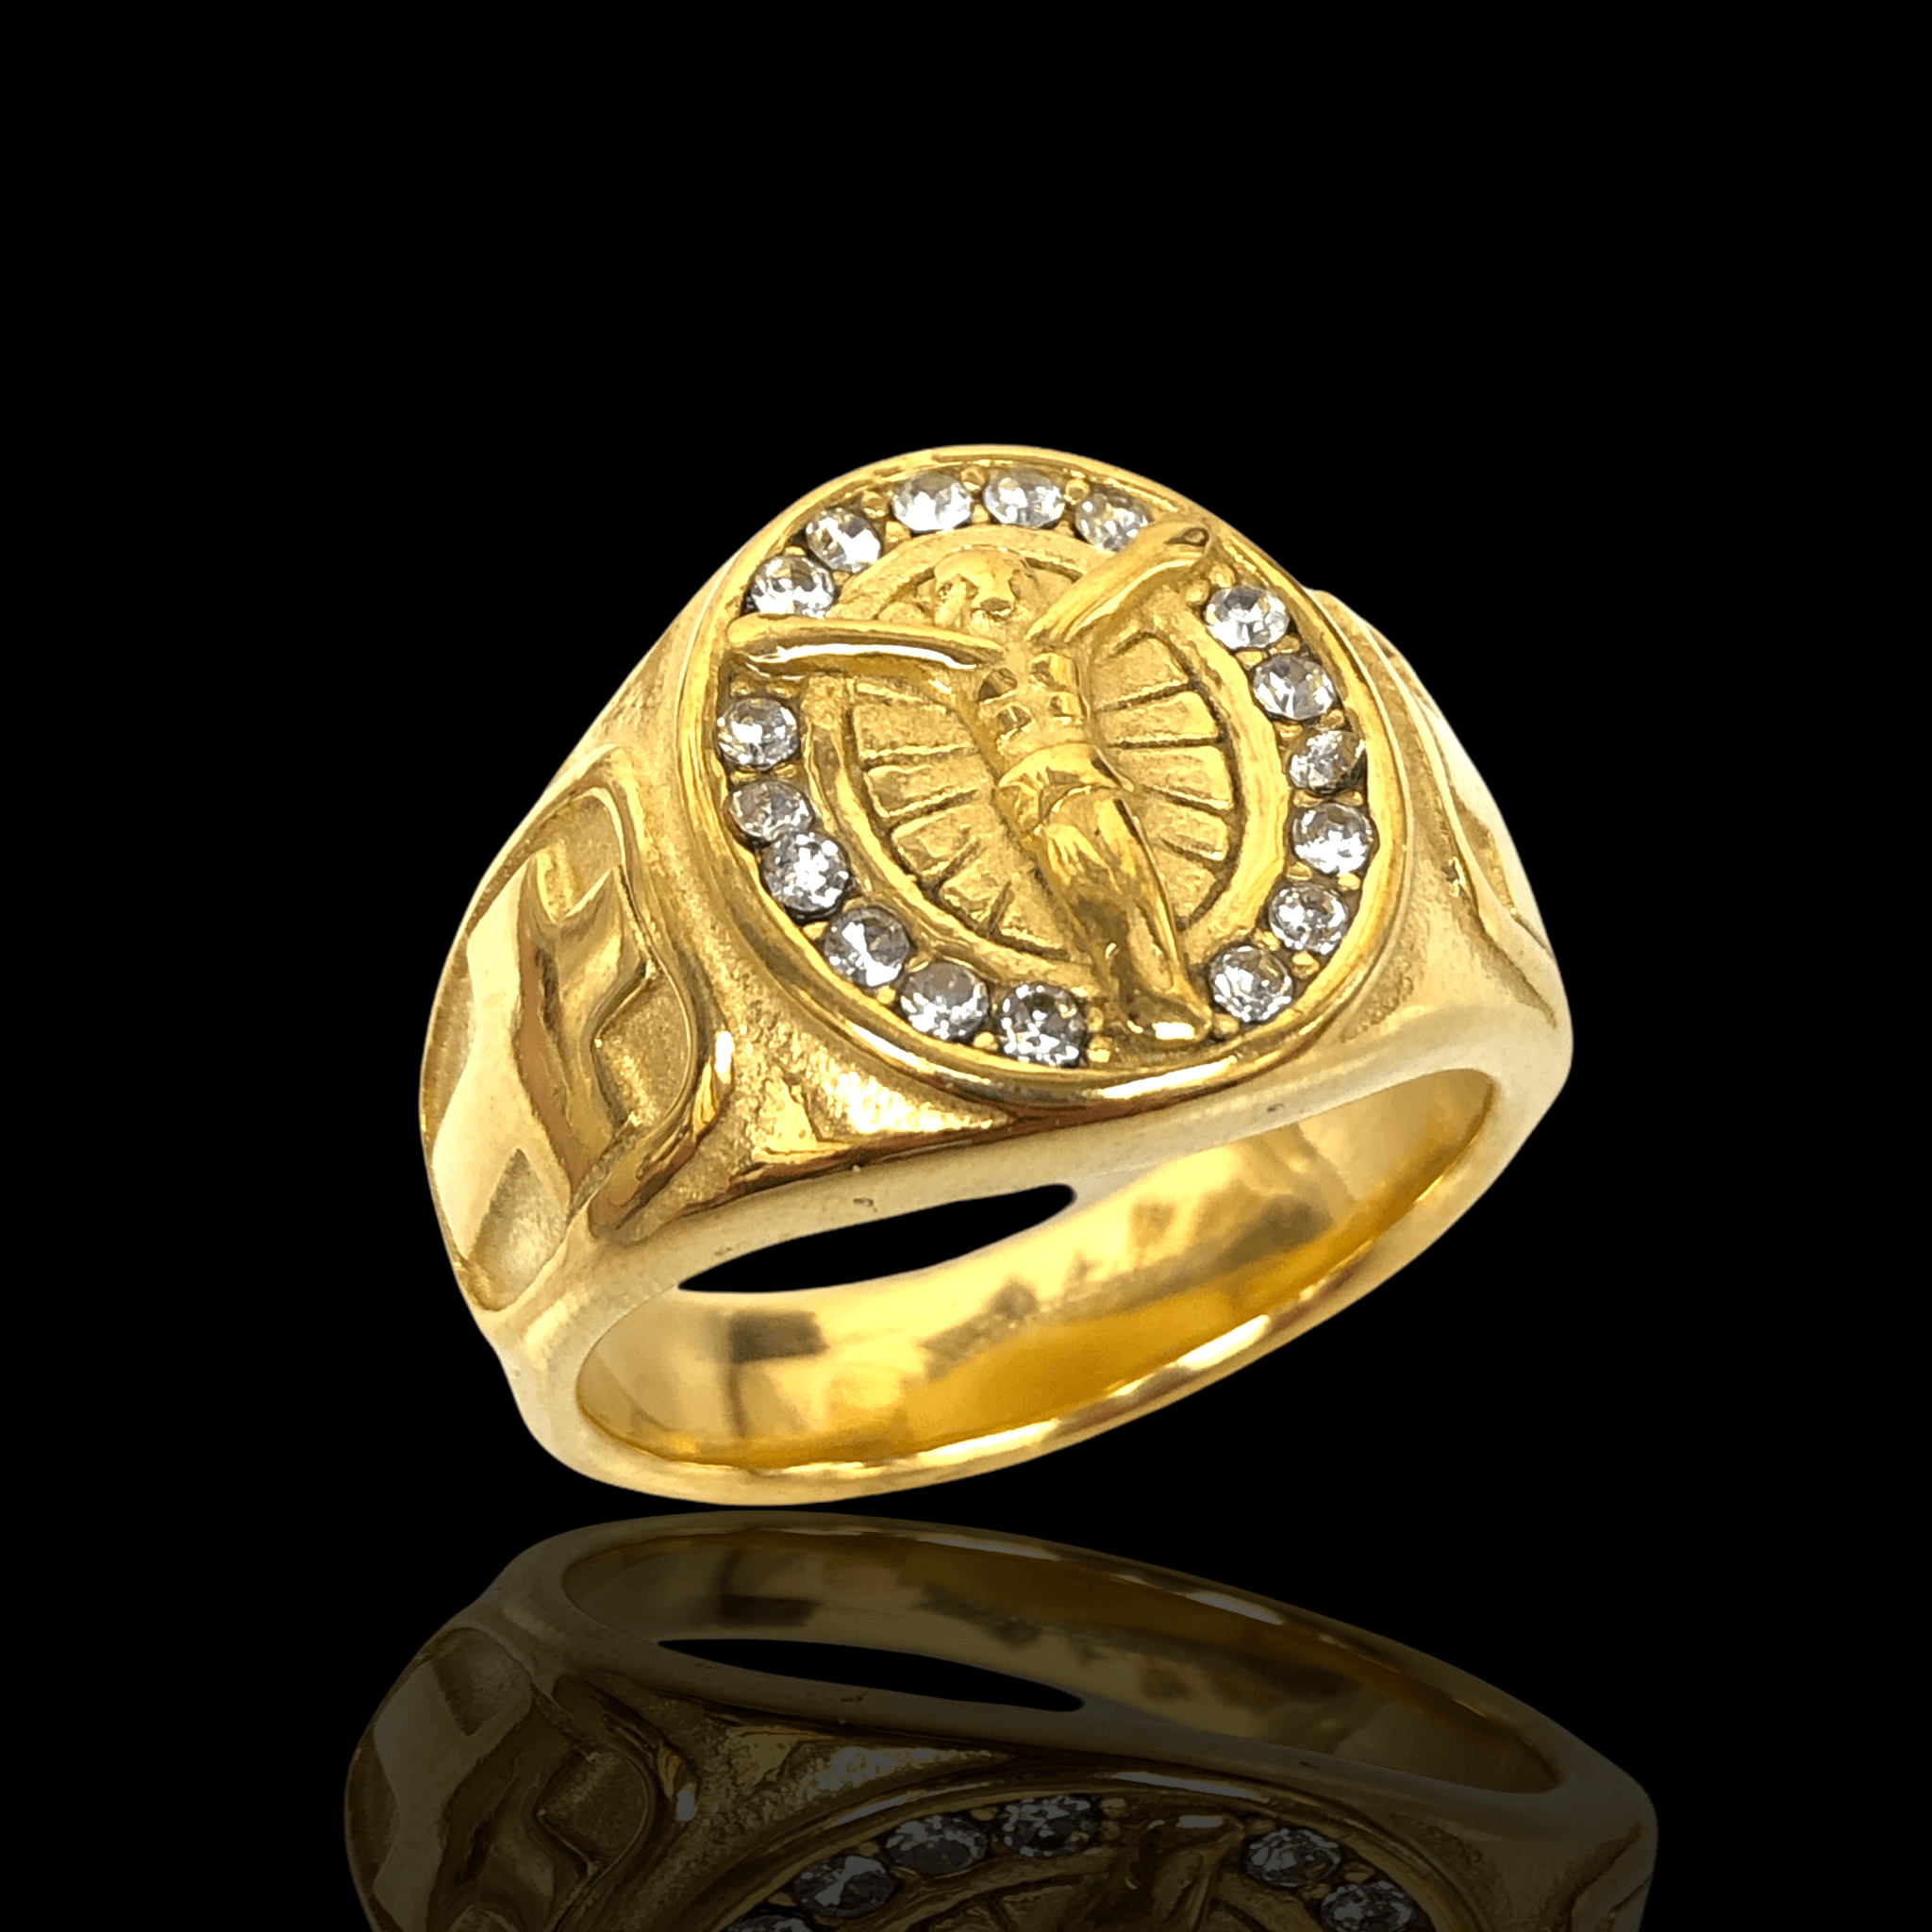 OLRA 0042 -18K Gold Filled Oro Laminado NEW - KUANIA